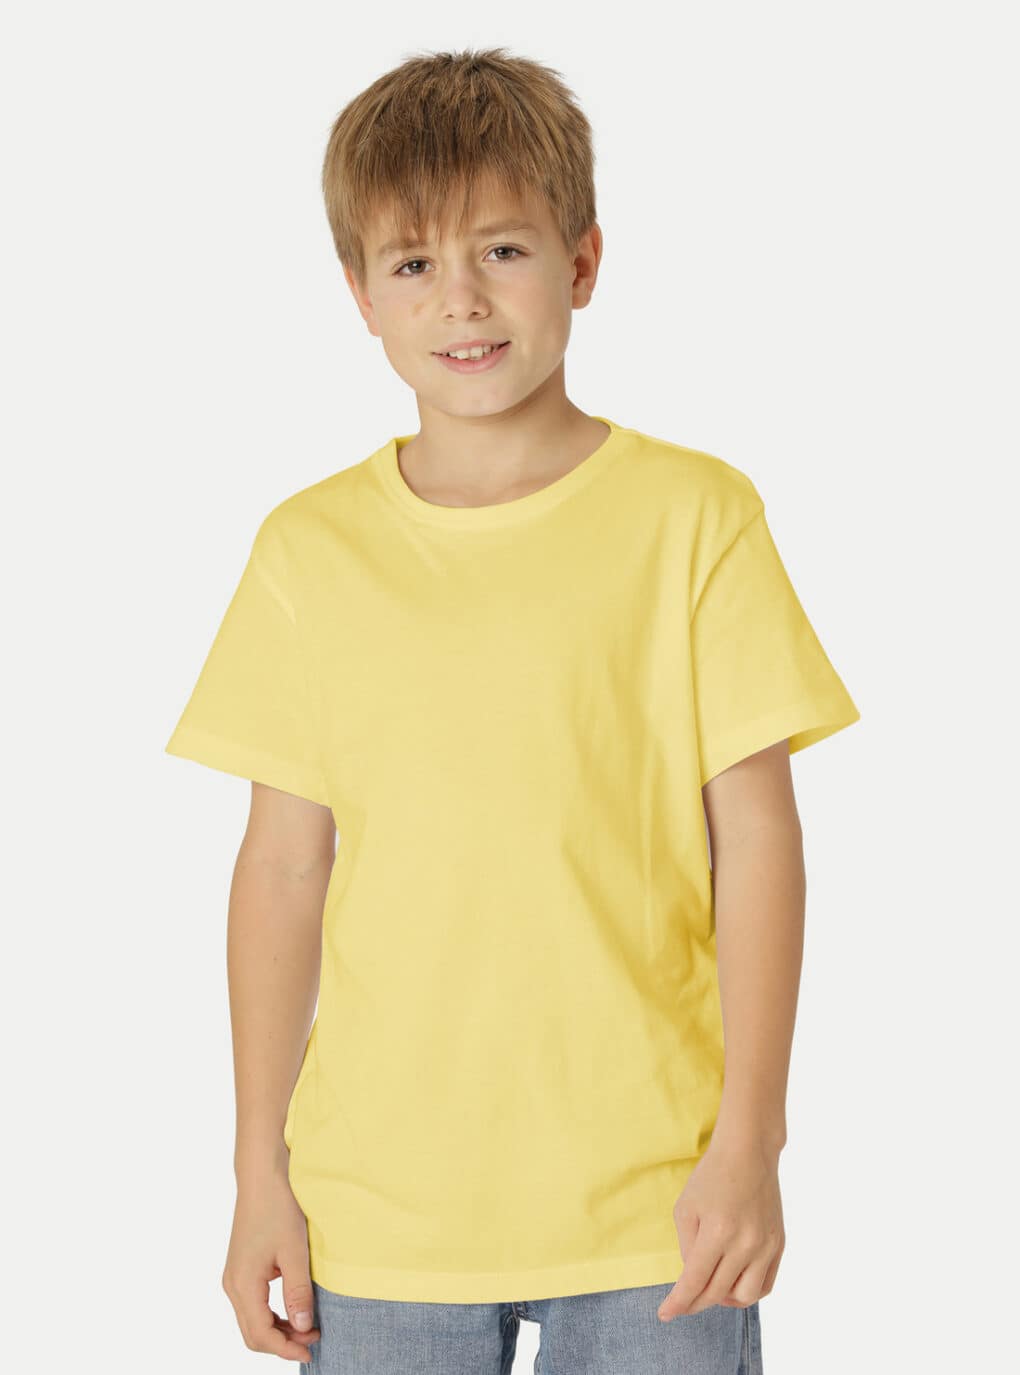 Kinder Peaces - unbedruckt Biomode T-Shirt